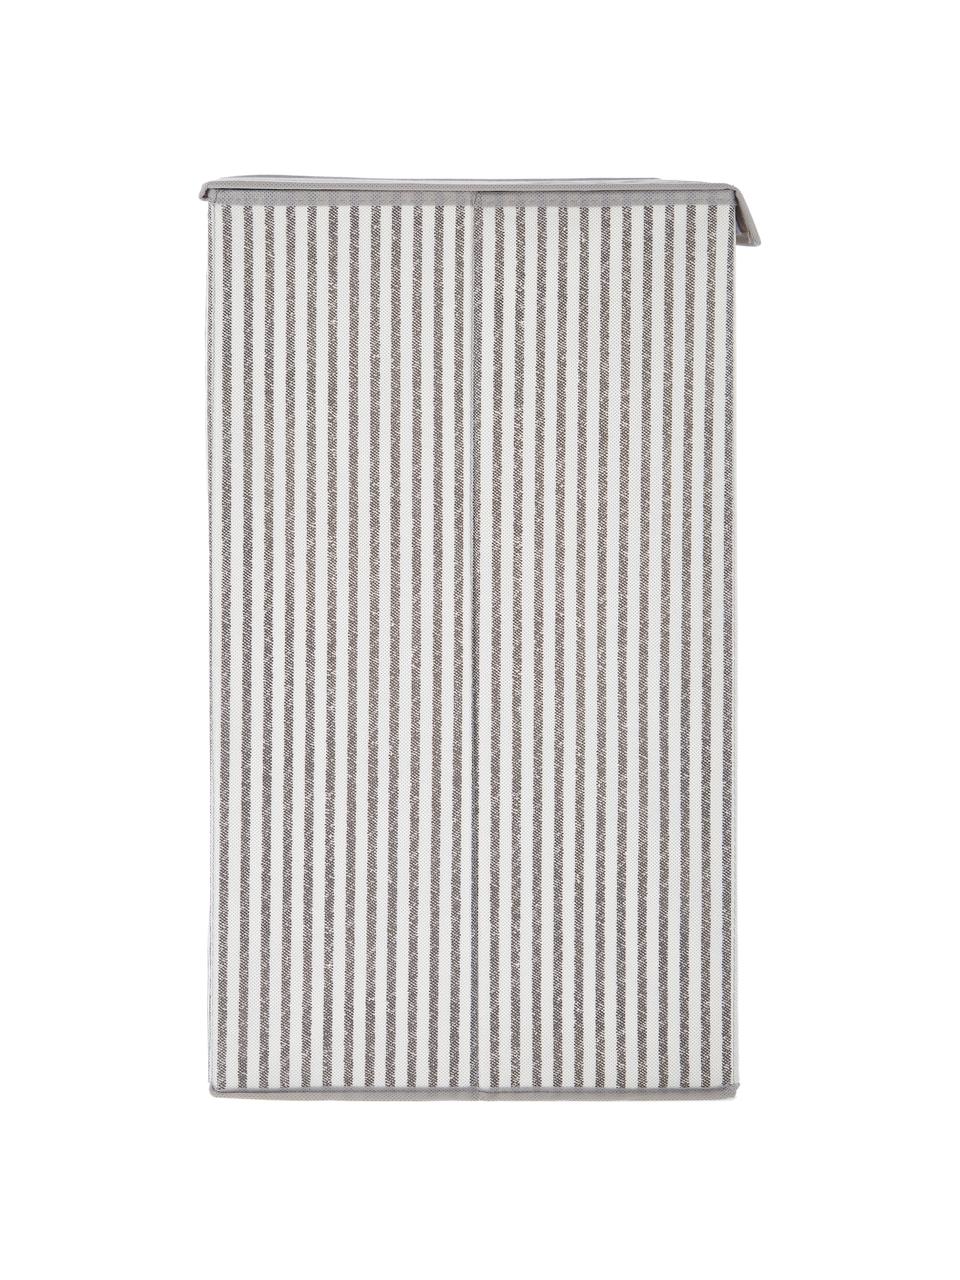 Wäschekorb Stripes, Griff: Metall, Beige, Cremefarben, B 32 x H 57 cm